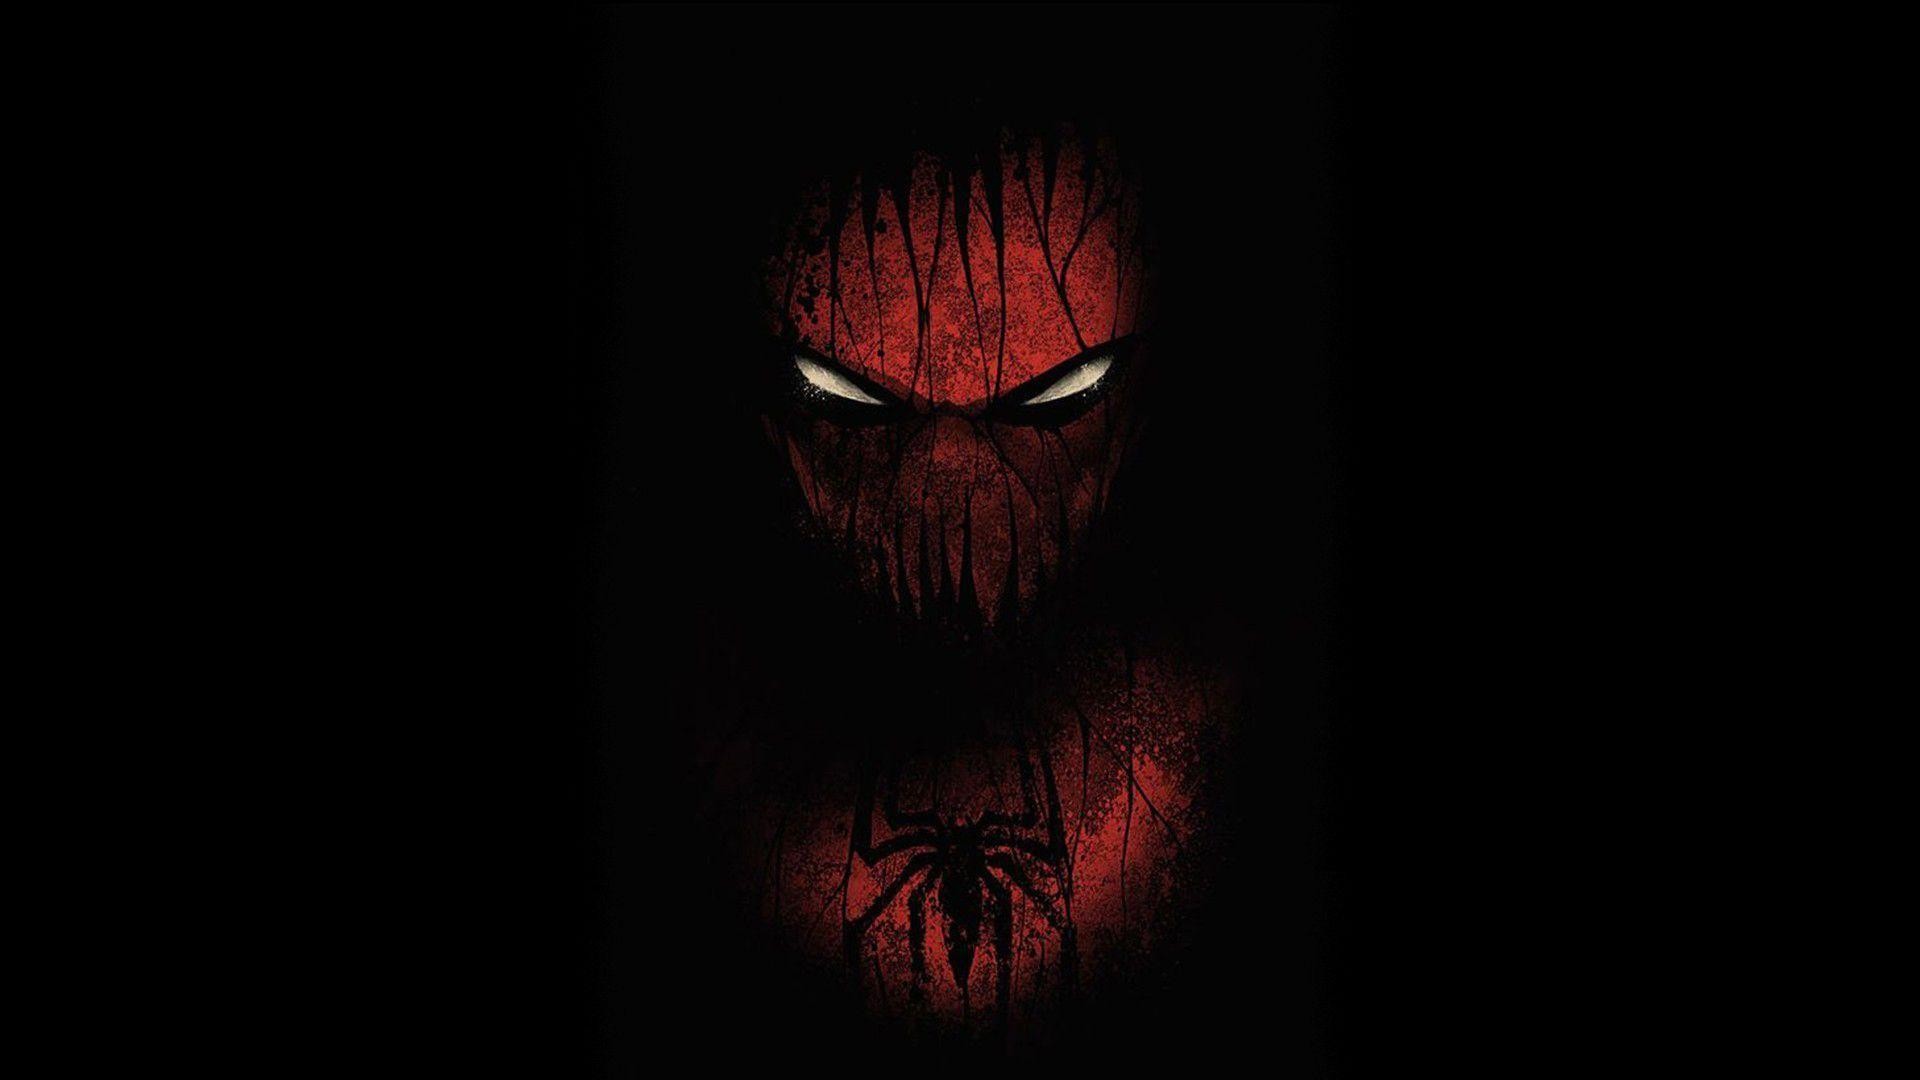 Spider-Man Black Marvel superman superhero wallpaper | .